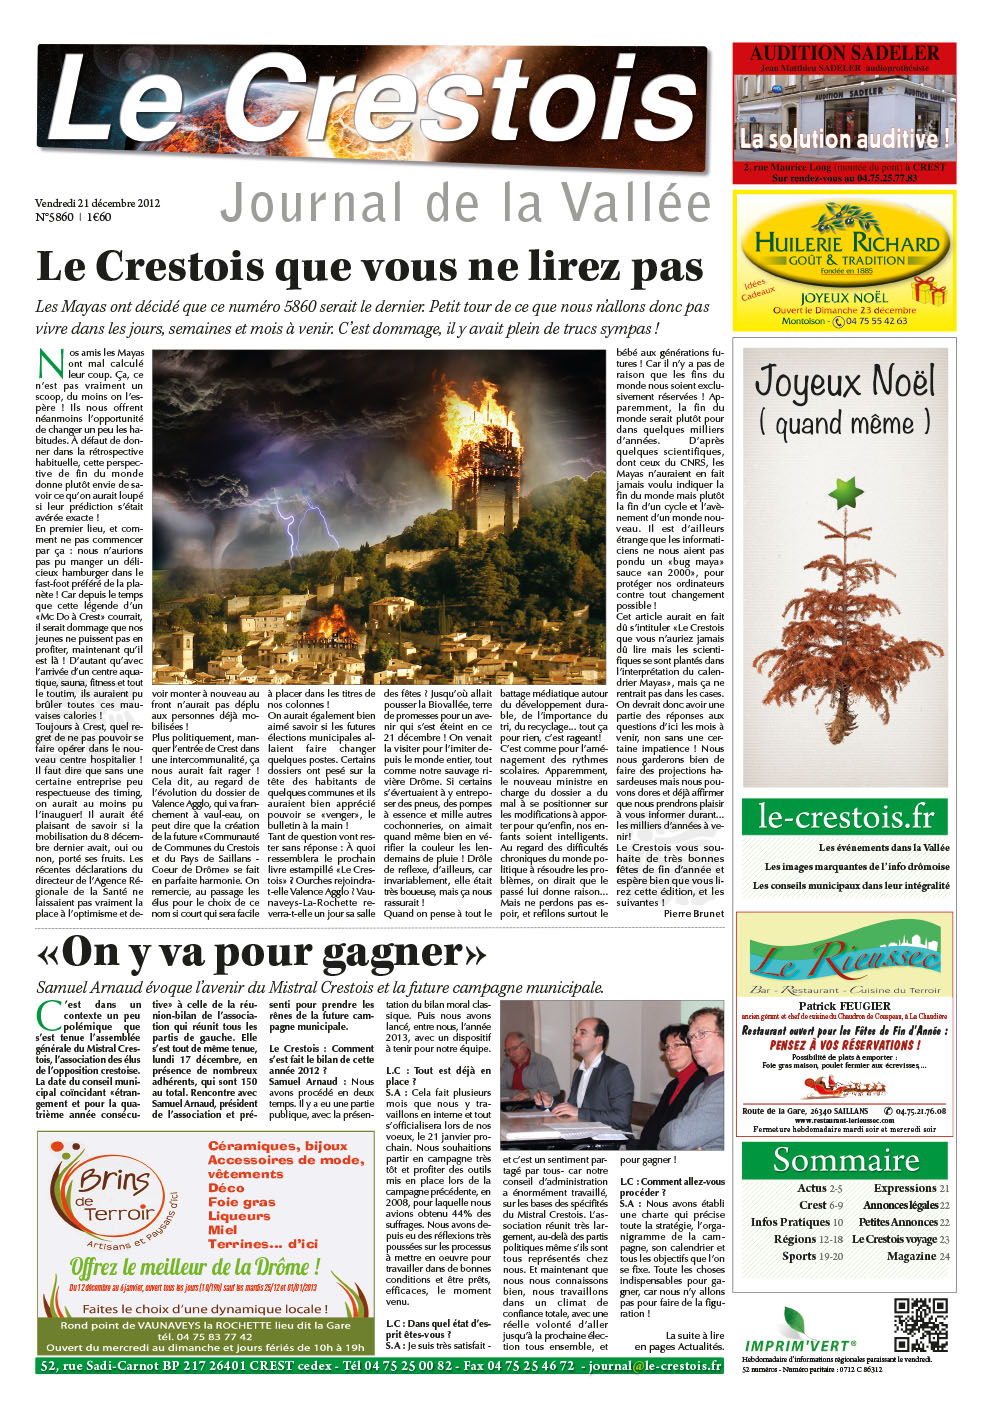 Journal Le Crestois - L'agence tous risques